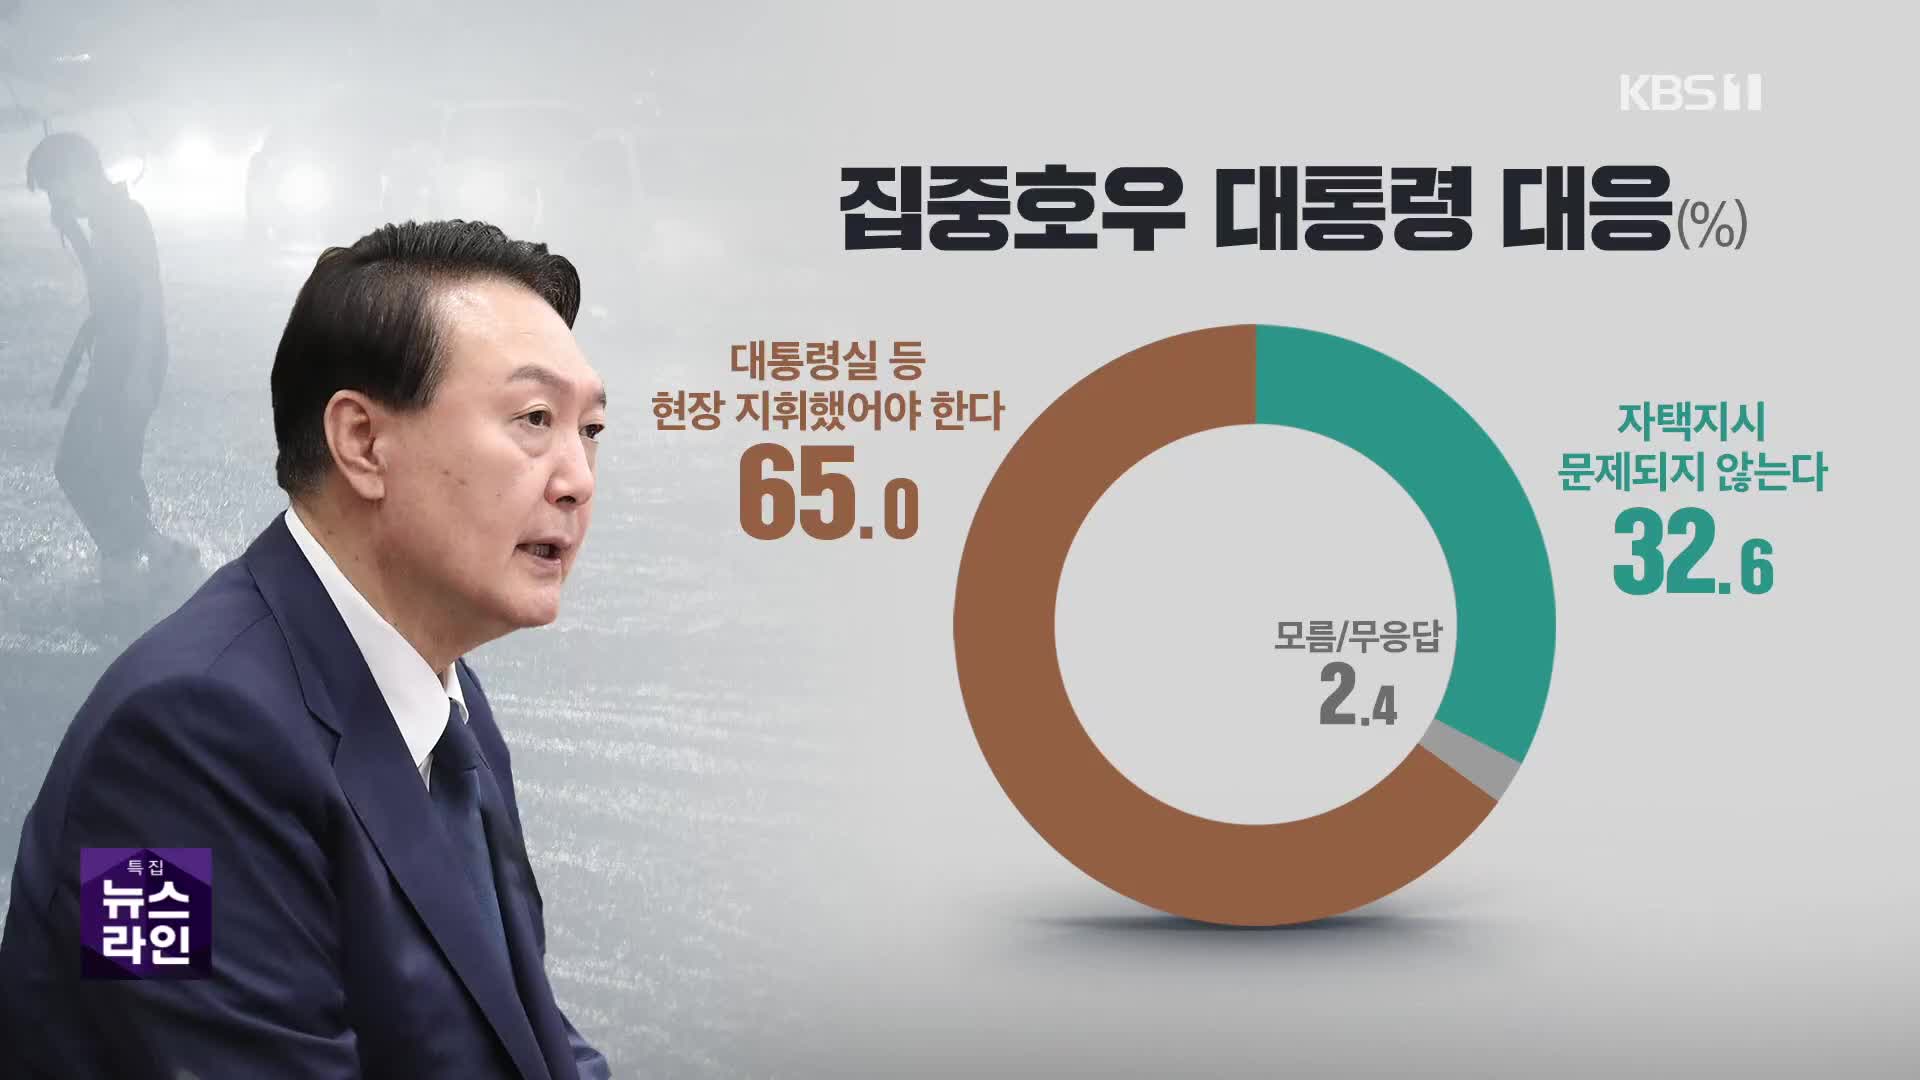 “尹, 집중호우 자택 지시 부적절” 65%